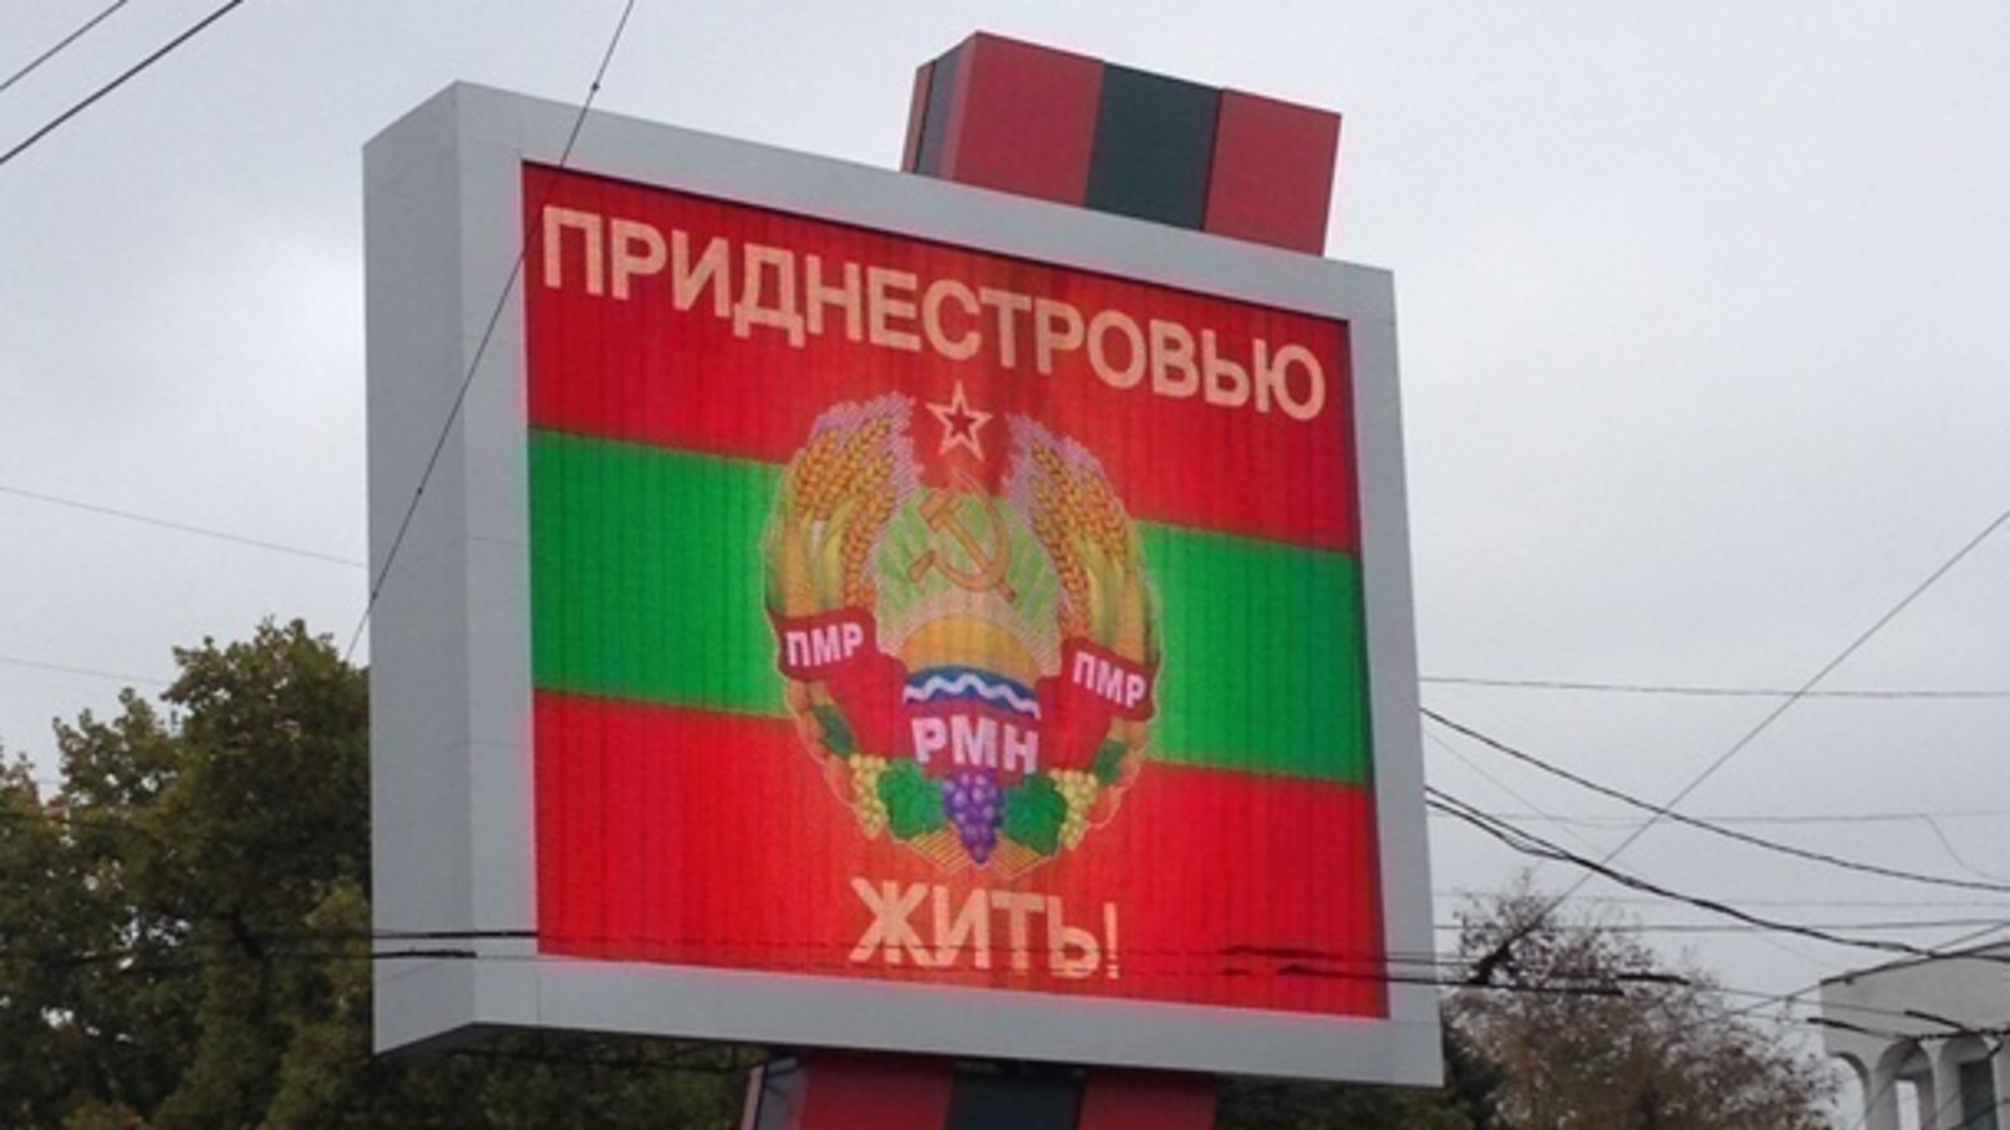 Приднестровье официально обратилось к россии и попросило 'защиты от Молдовы'